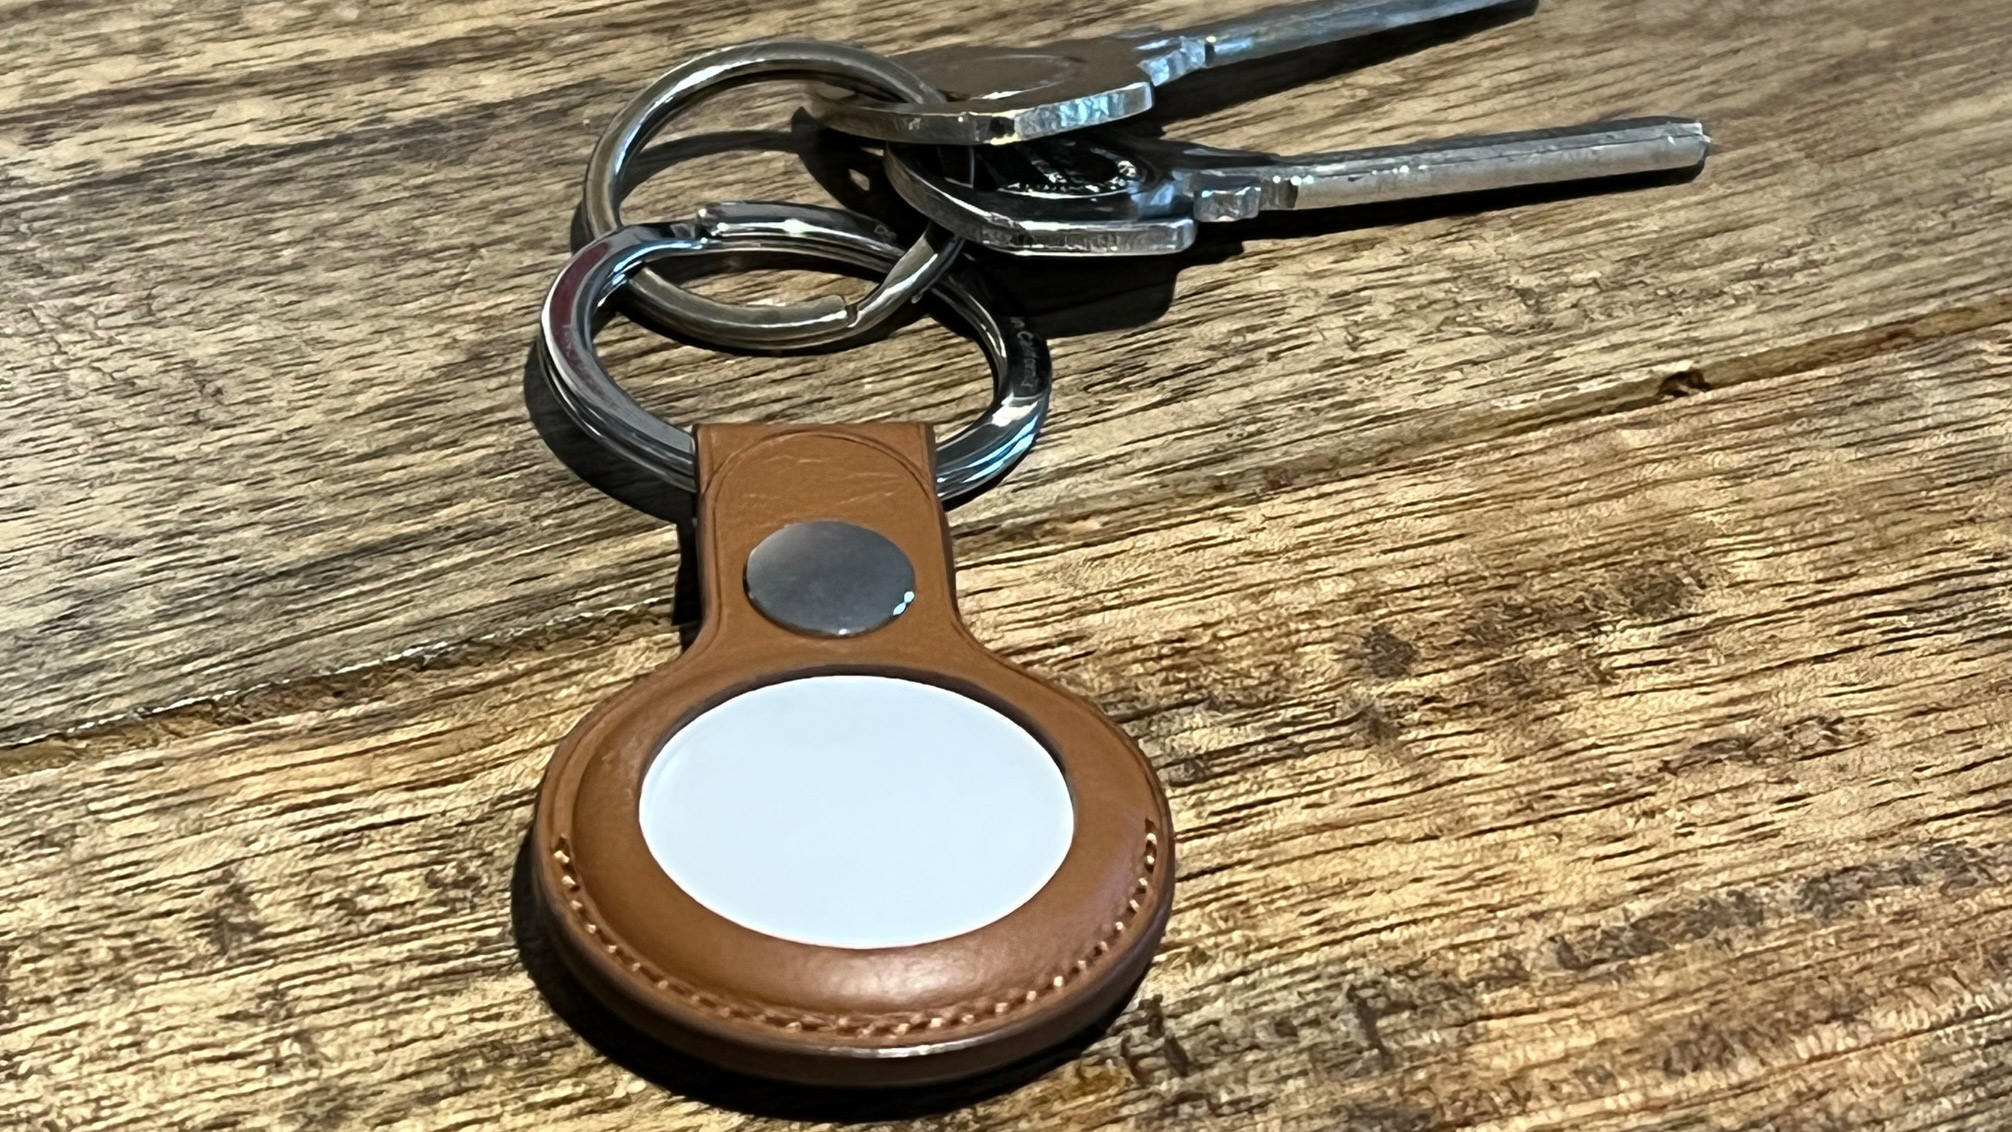  Apple AirTag в коричневом кожаном держателе для брелока, прикрепленном к некоторым ключам на деревянной поверхности